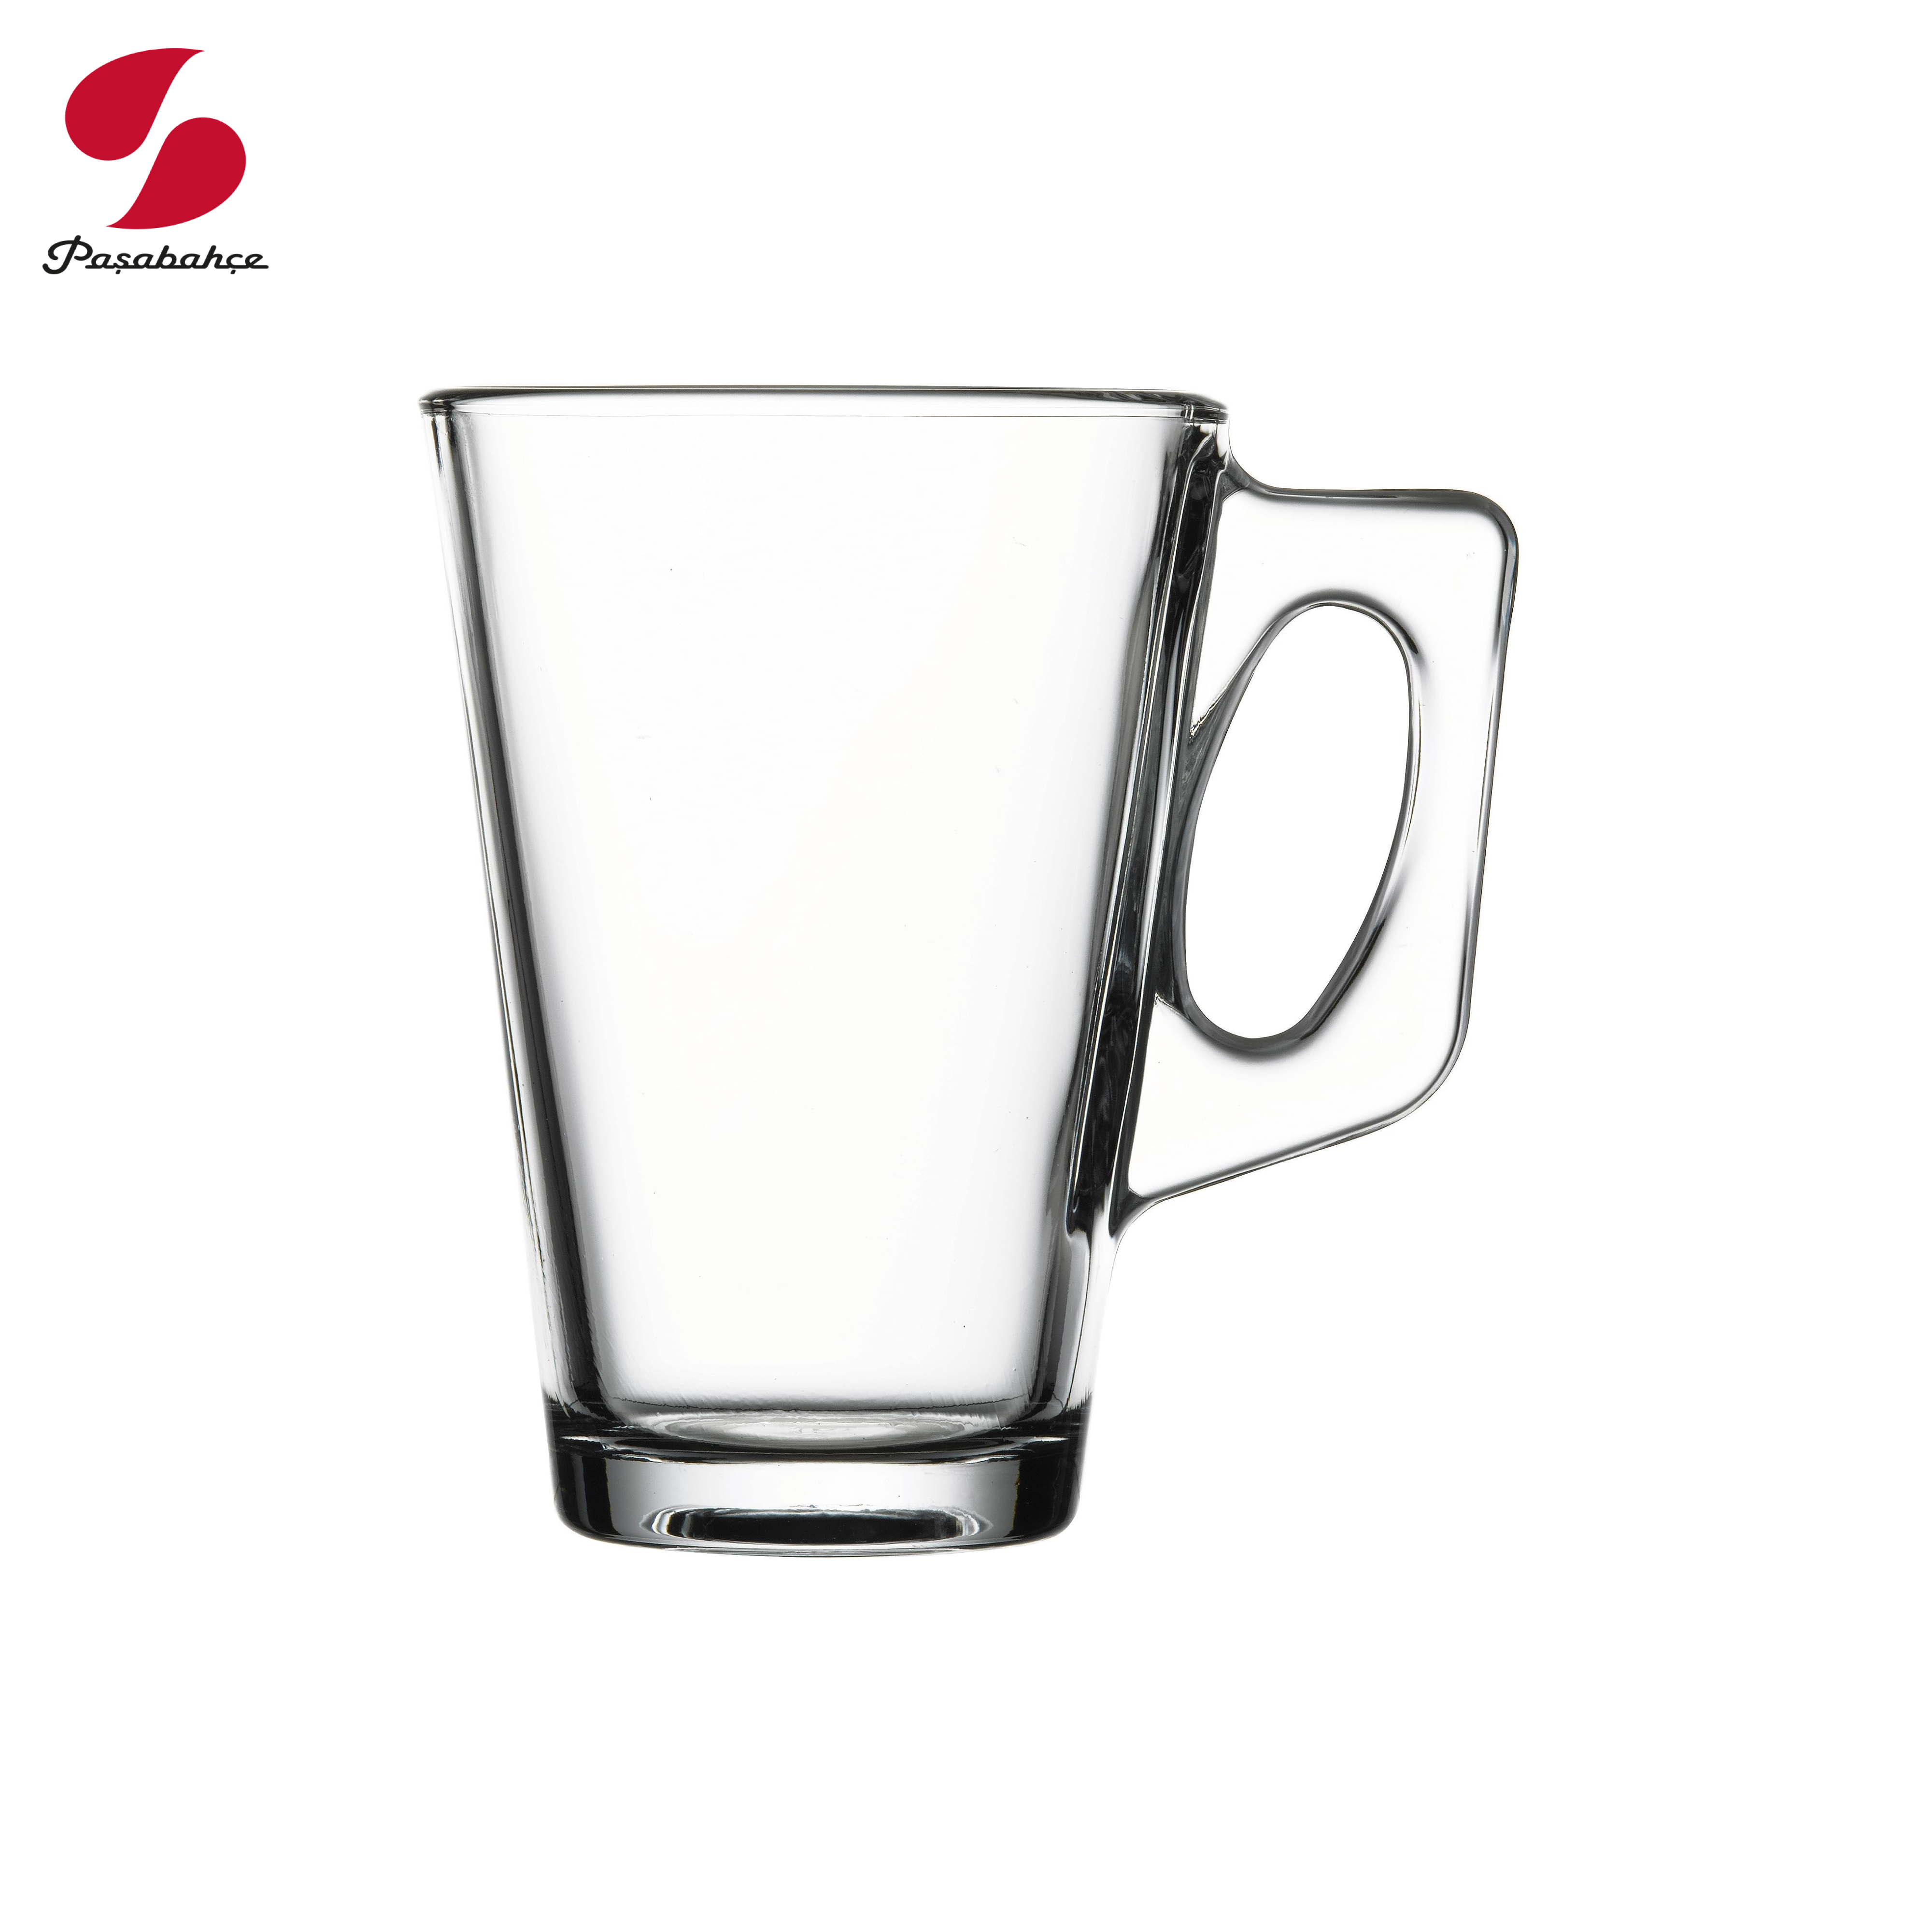 Gotë qelqi për latte/kafe Vela (2 copë), 250 ML